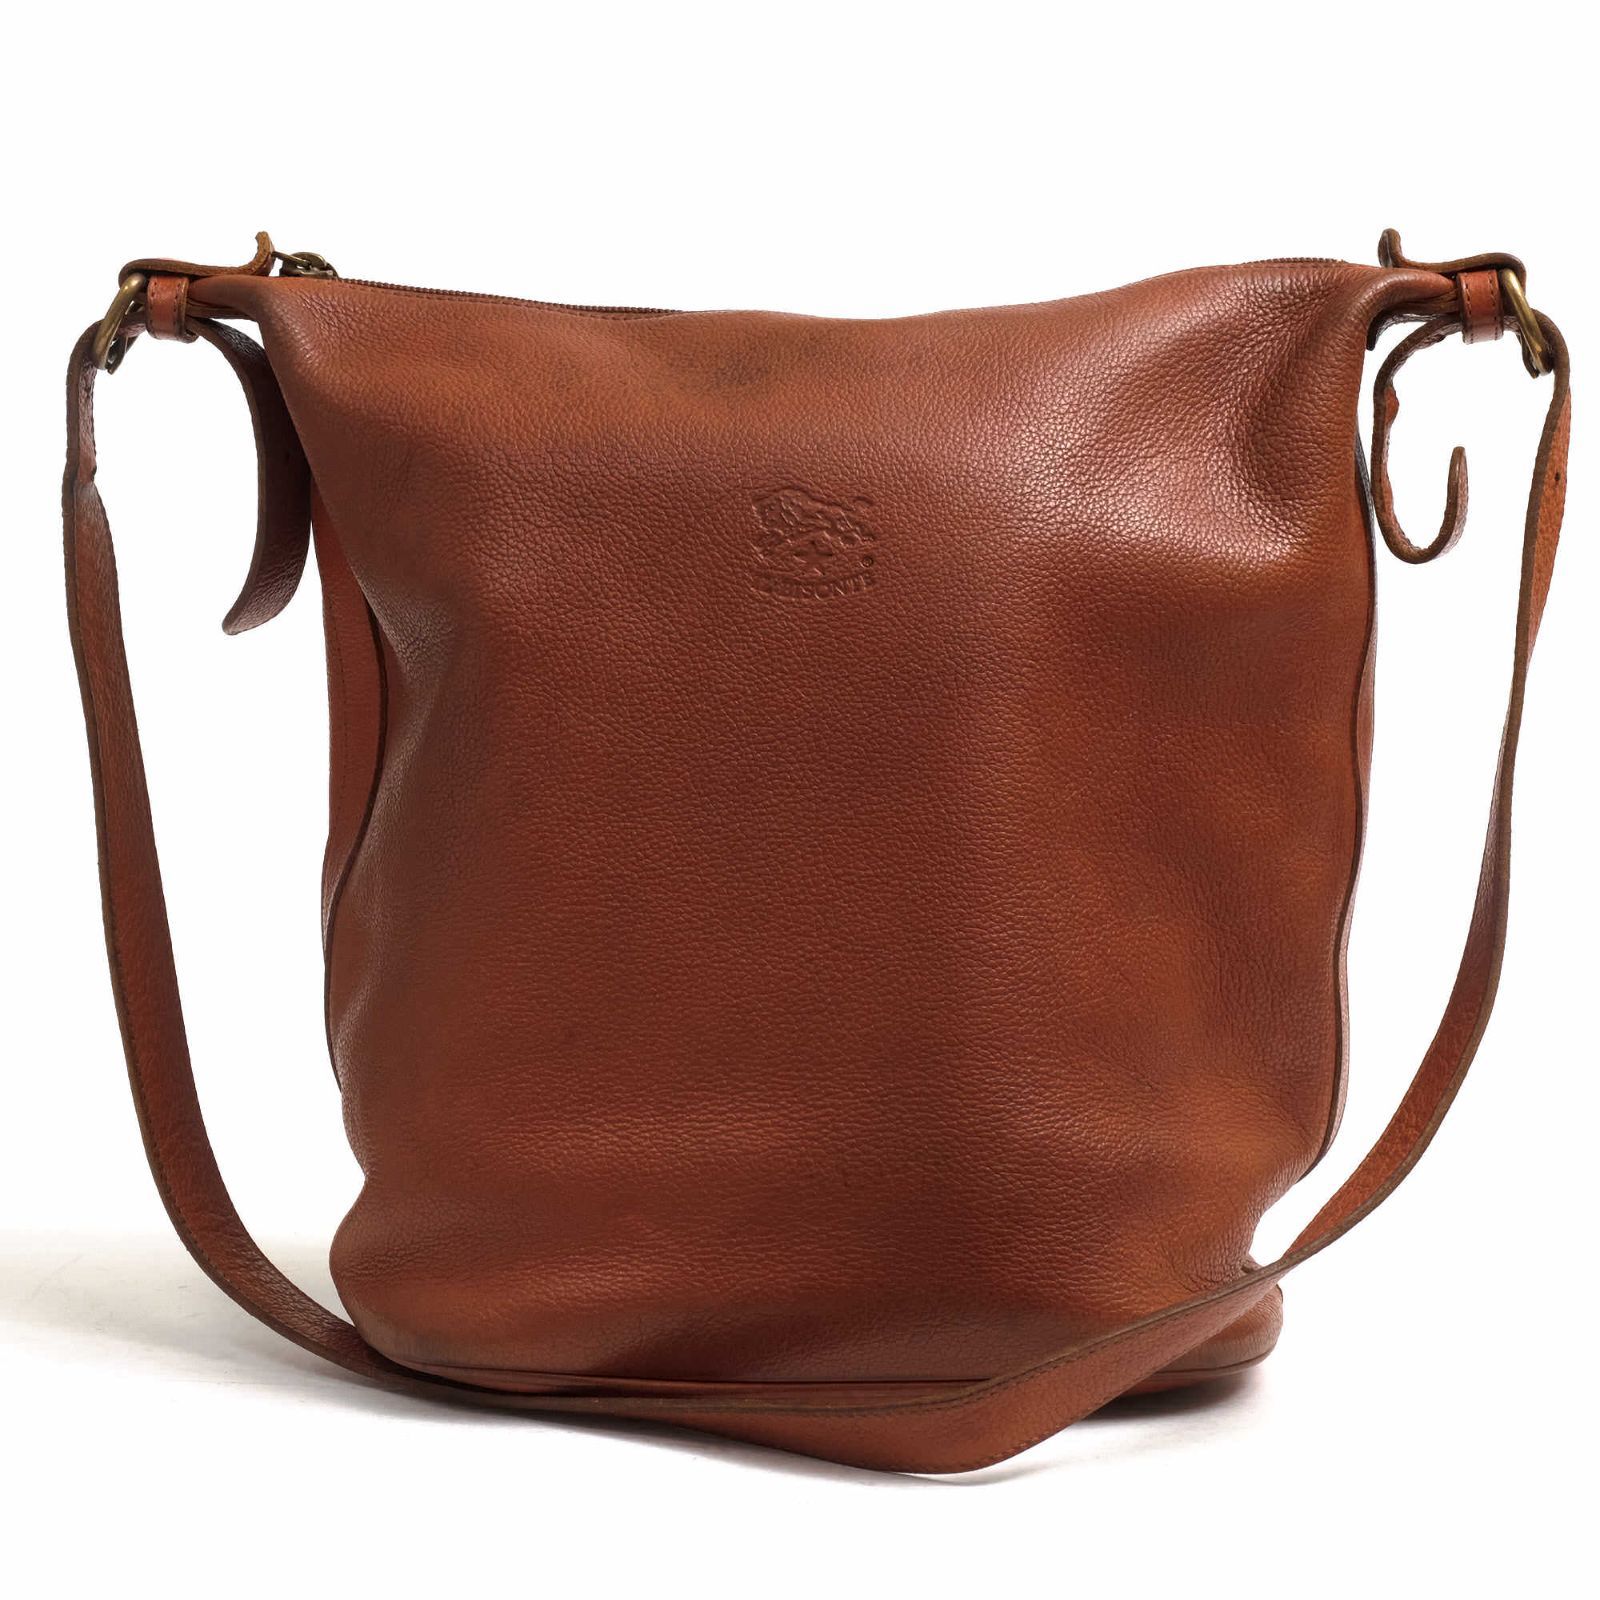 イルビゾンテ／IL BISONTE バッグ ショルダーバッグ 鞄 レディース 女性 女性用レザー 革 本革 ブラウン 茶 410067 バケツ型 -  メルカリ